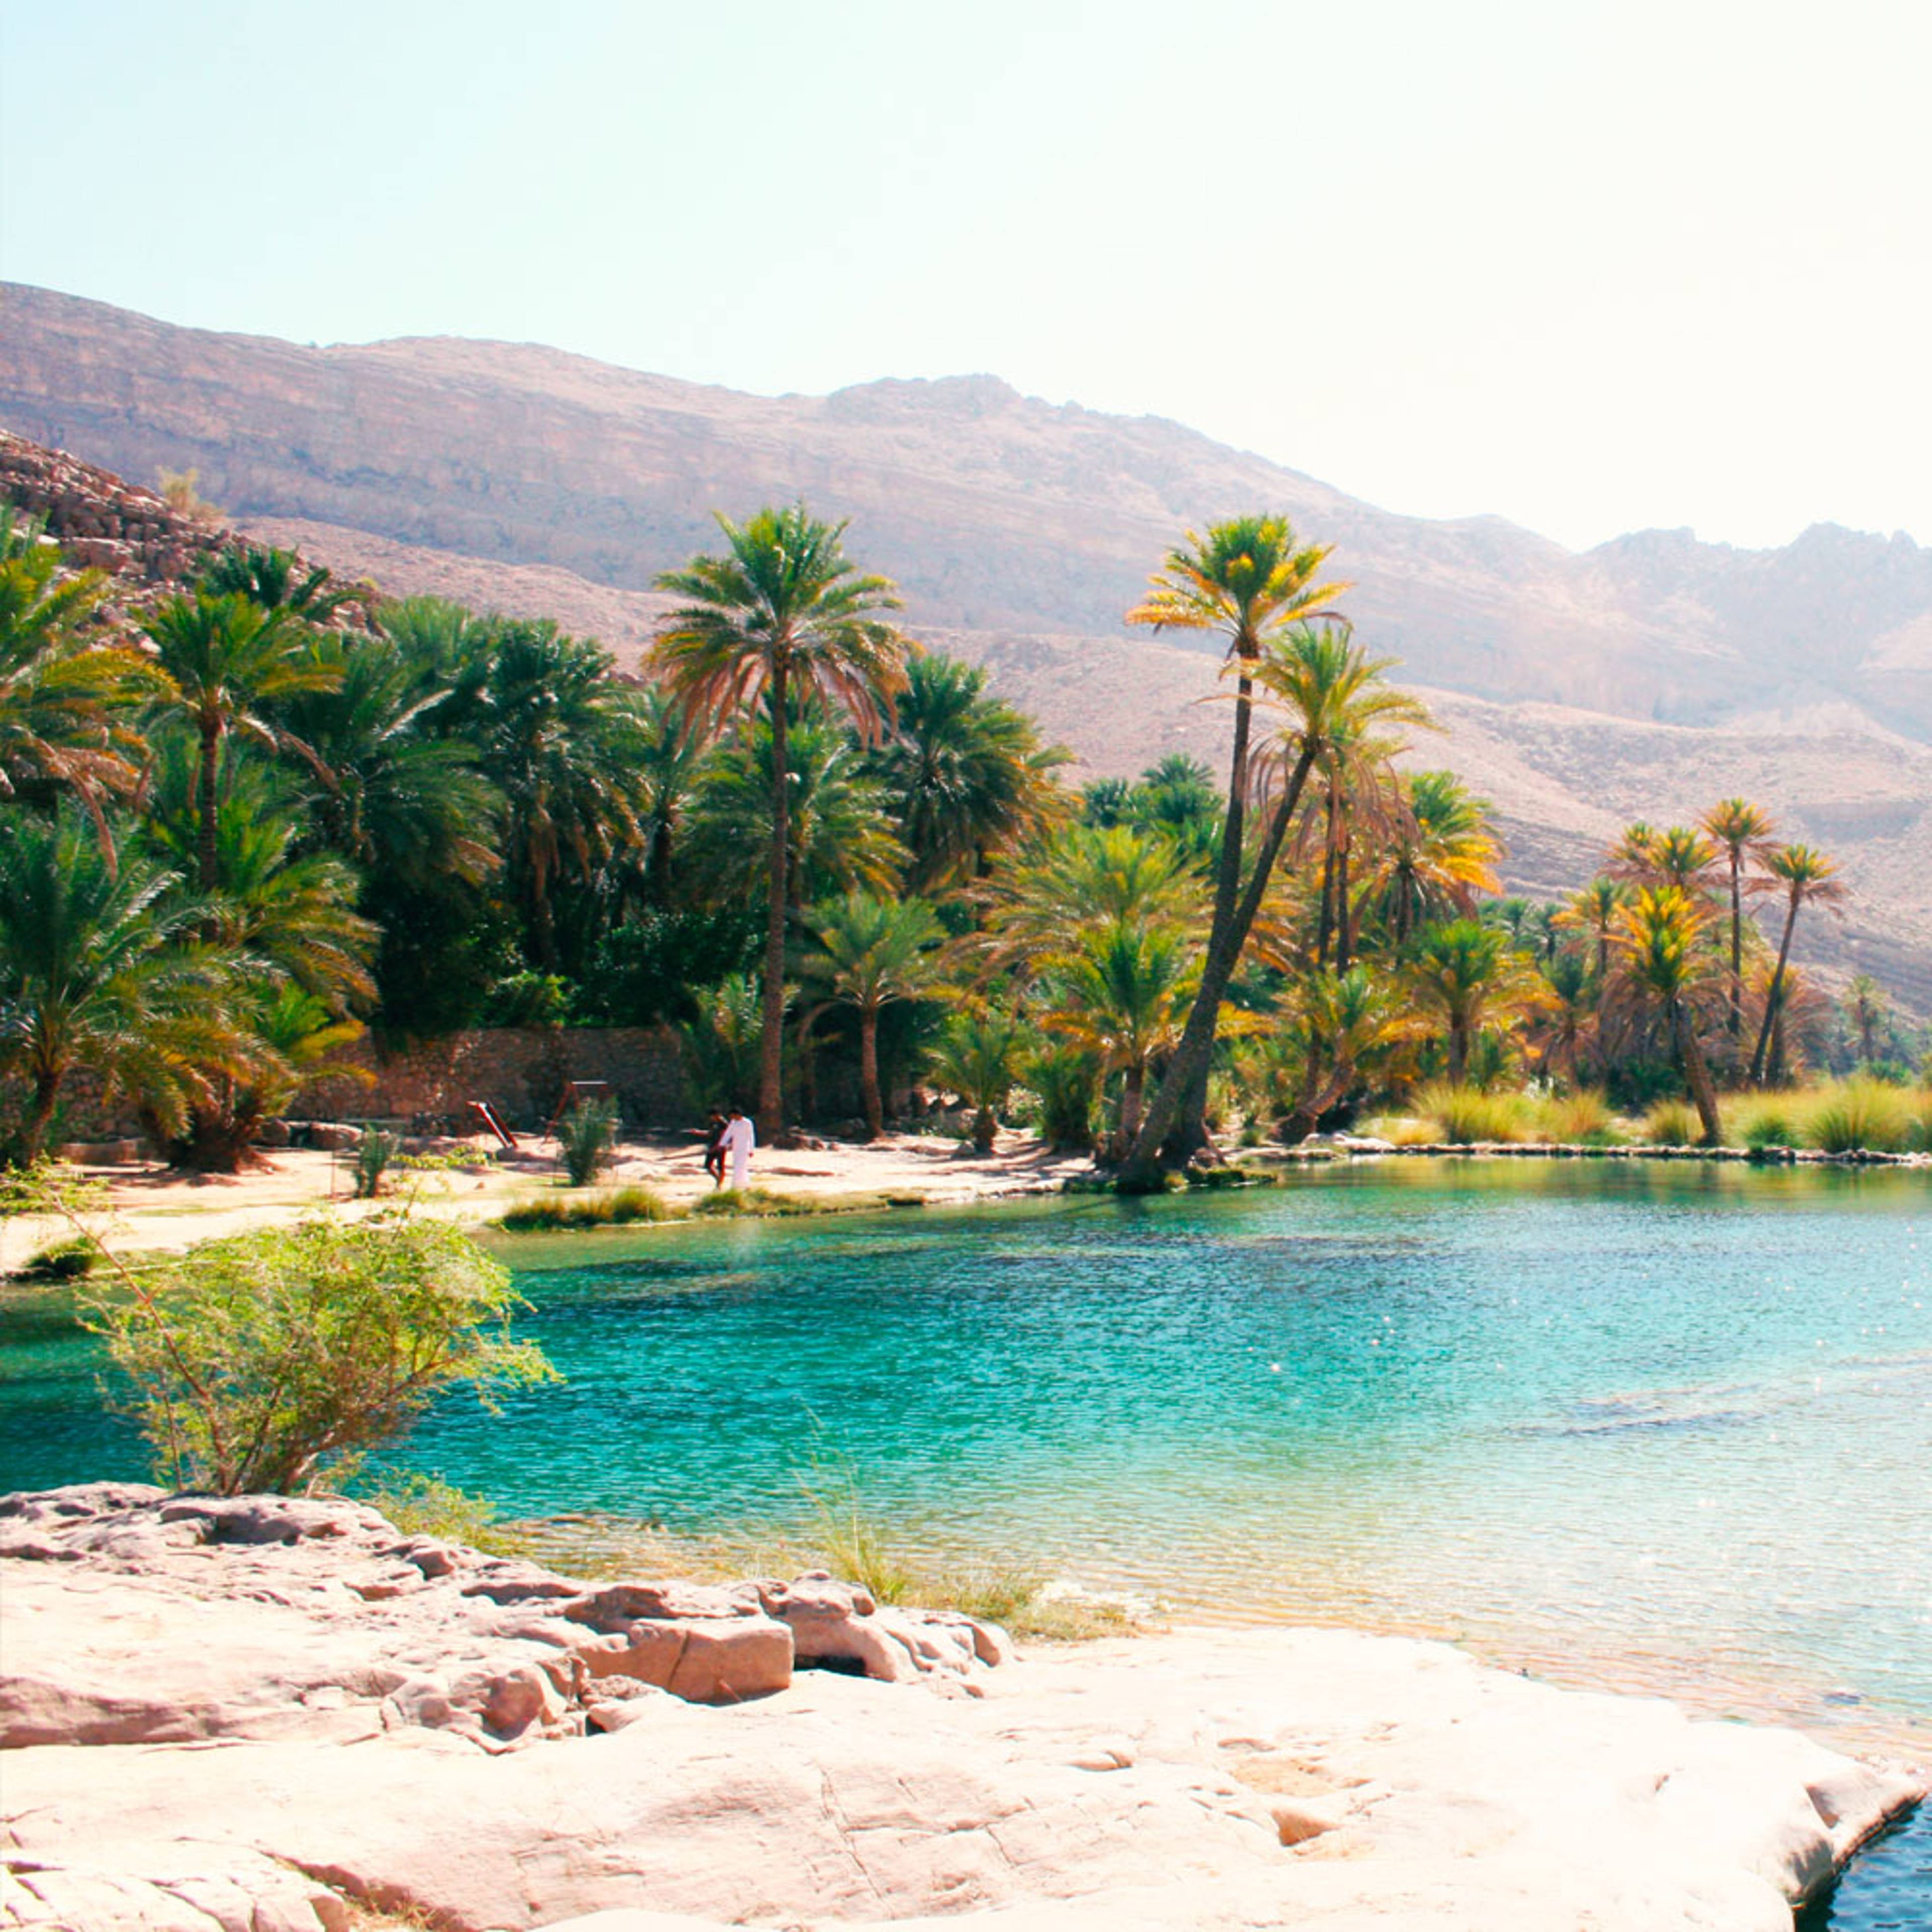 Crea il tuo viaggio in Oman in inverno, 100% su misura